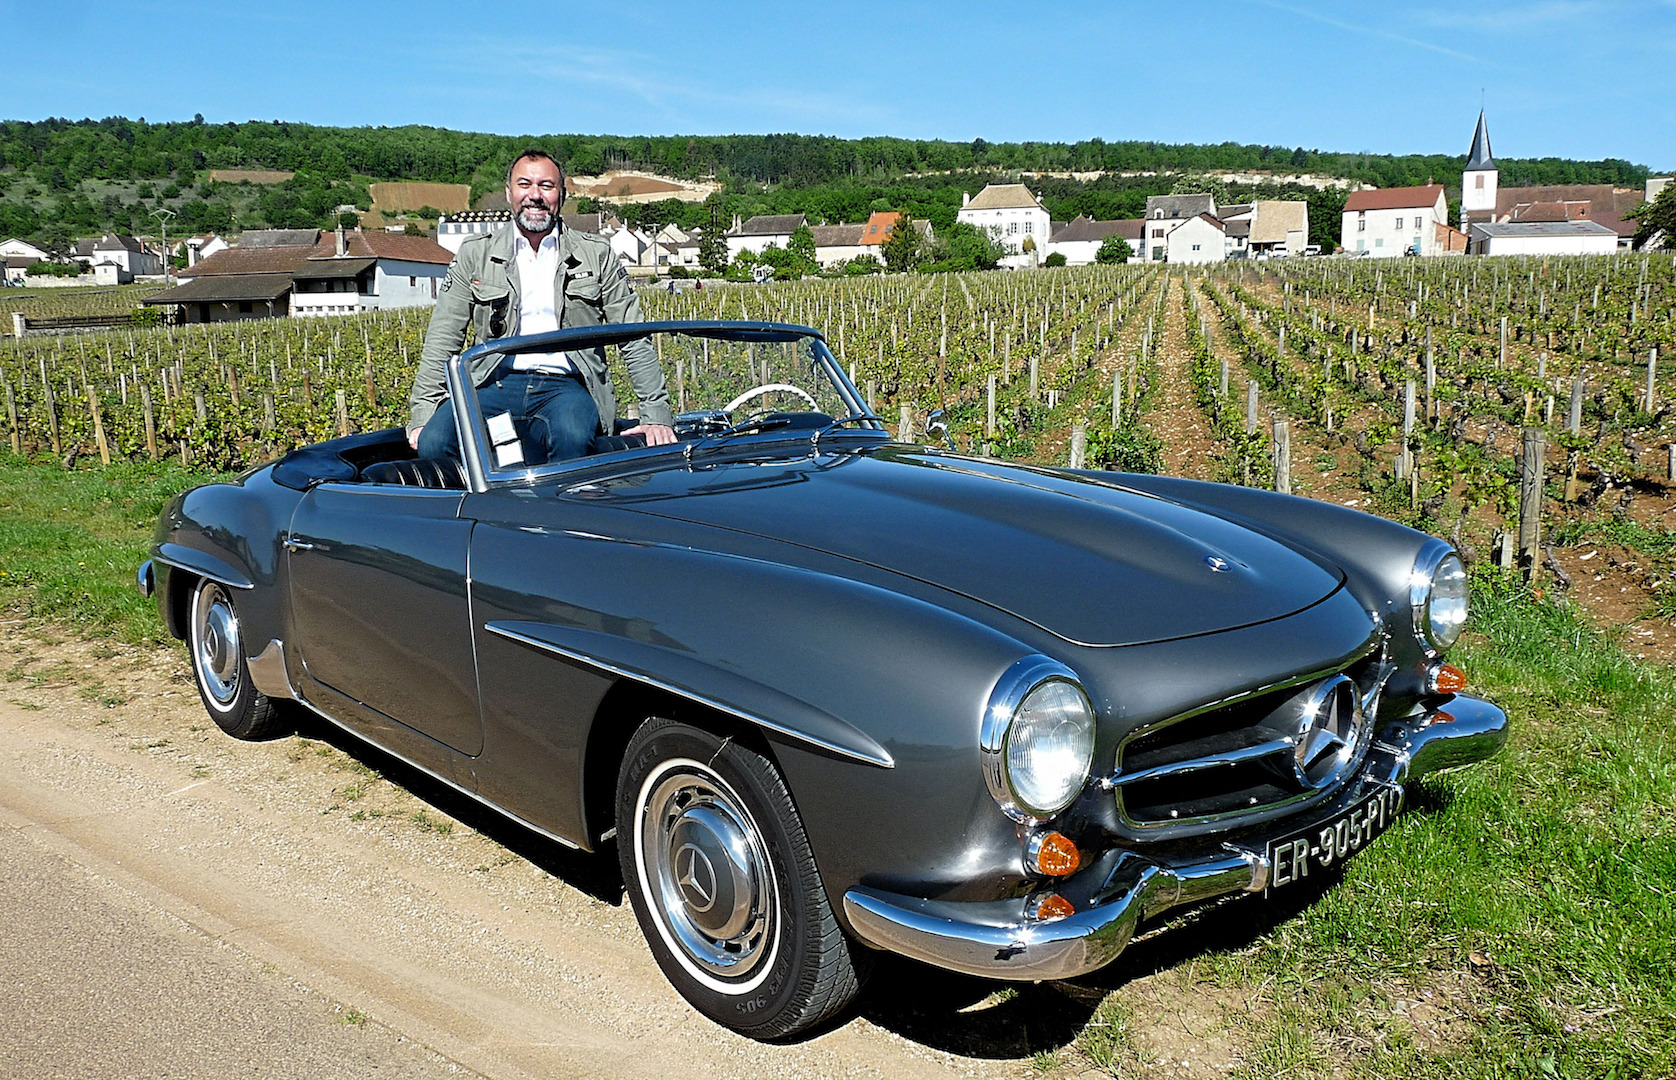 Mercedes en France et en Provence : histoire de la marque et des